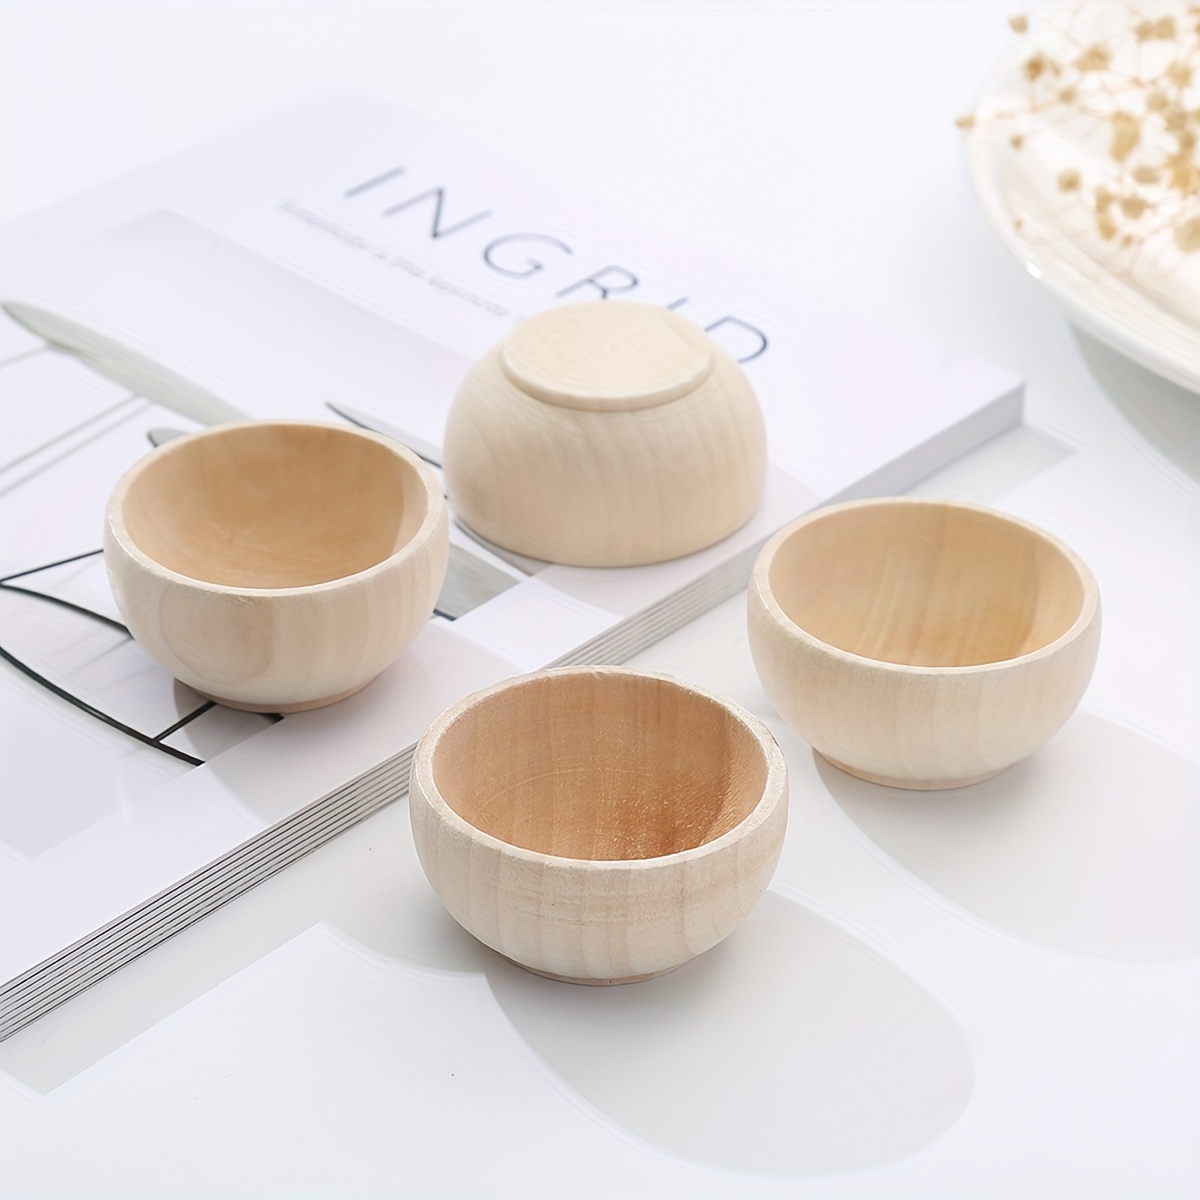 

3pcs Diy Wooden Shaped Bowls, Craft Painting Small Wooden Bowls Set, Natural Wooden Decorative Bowl